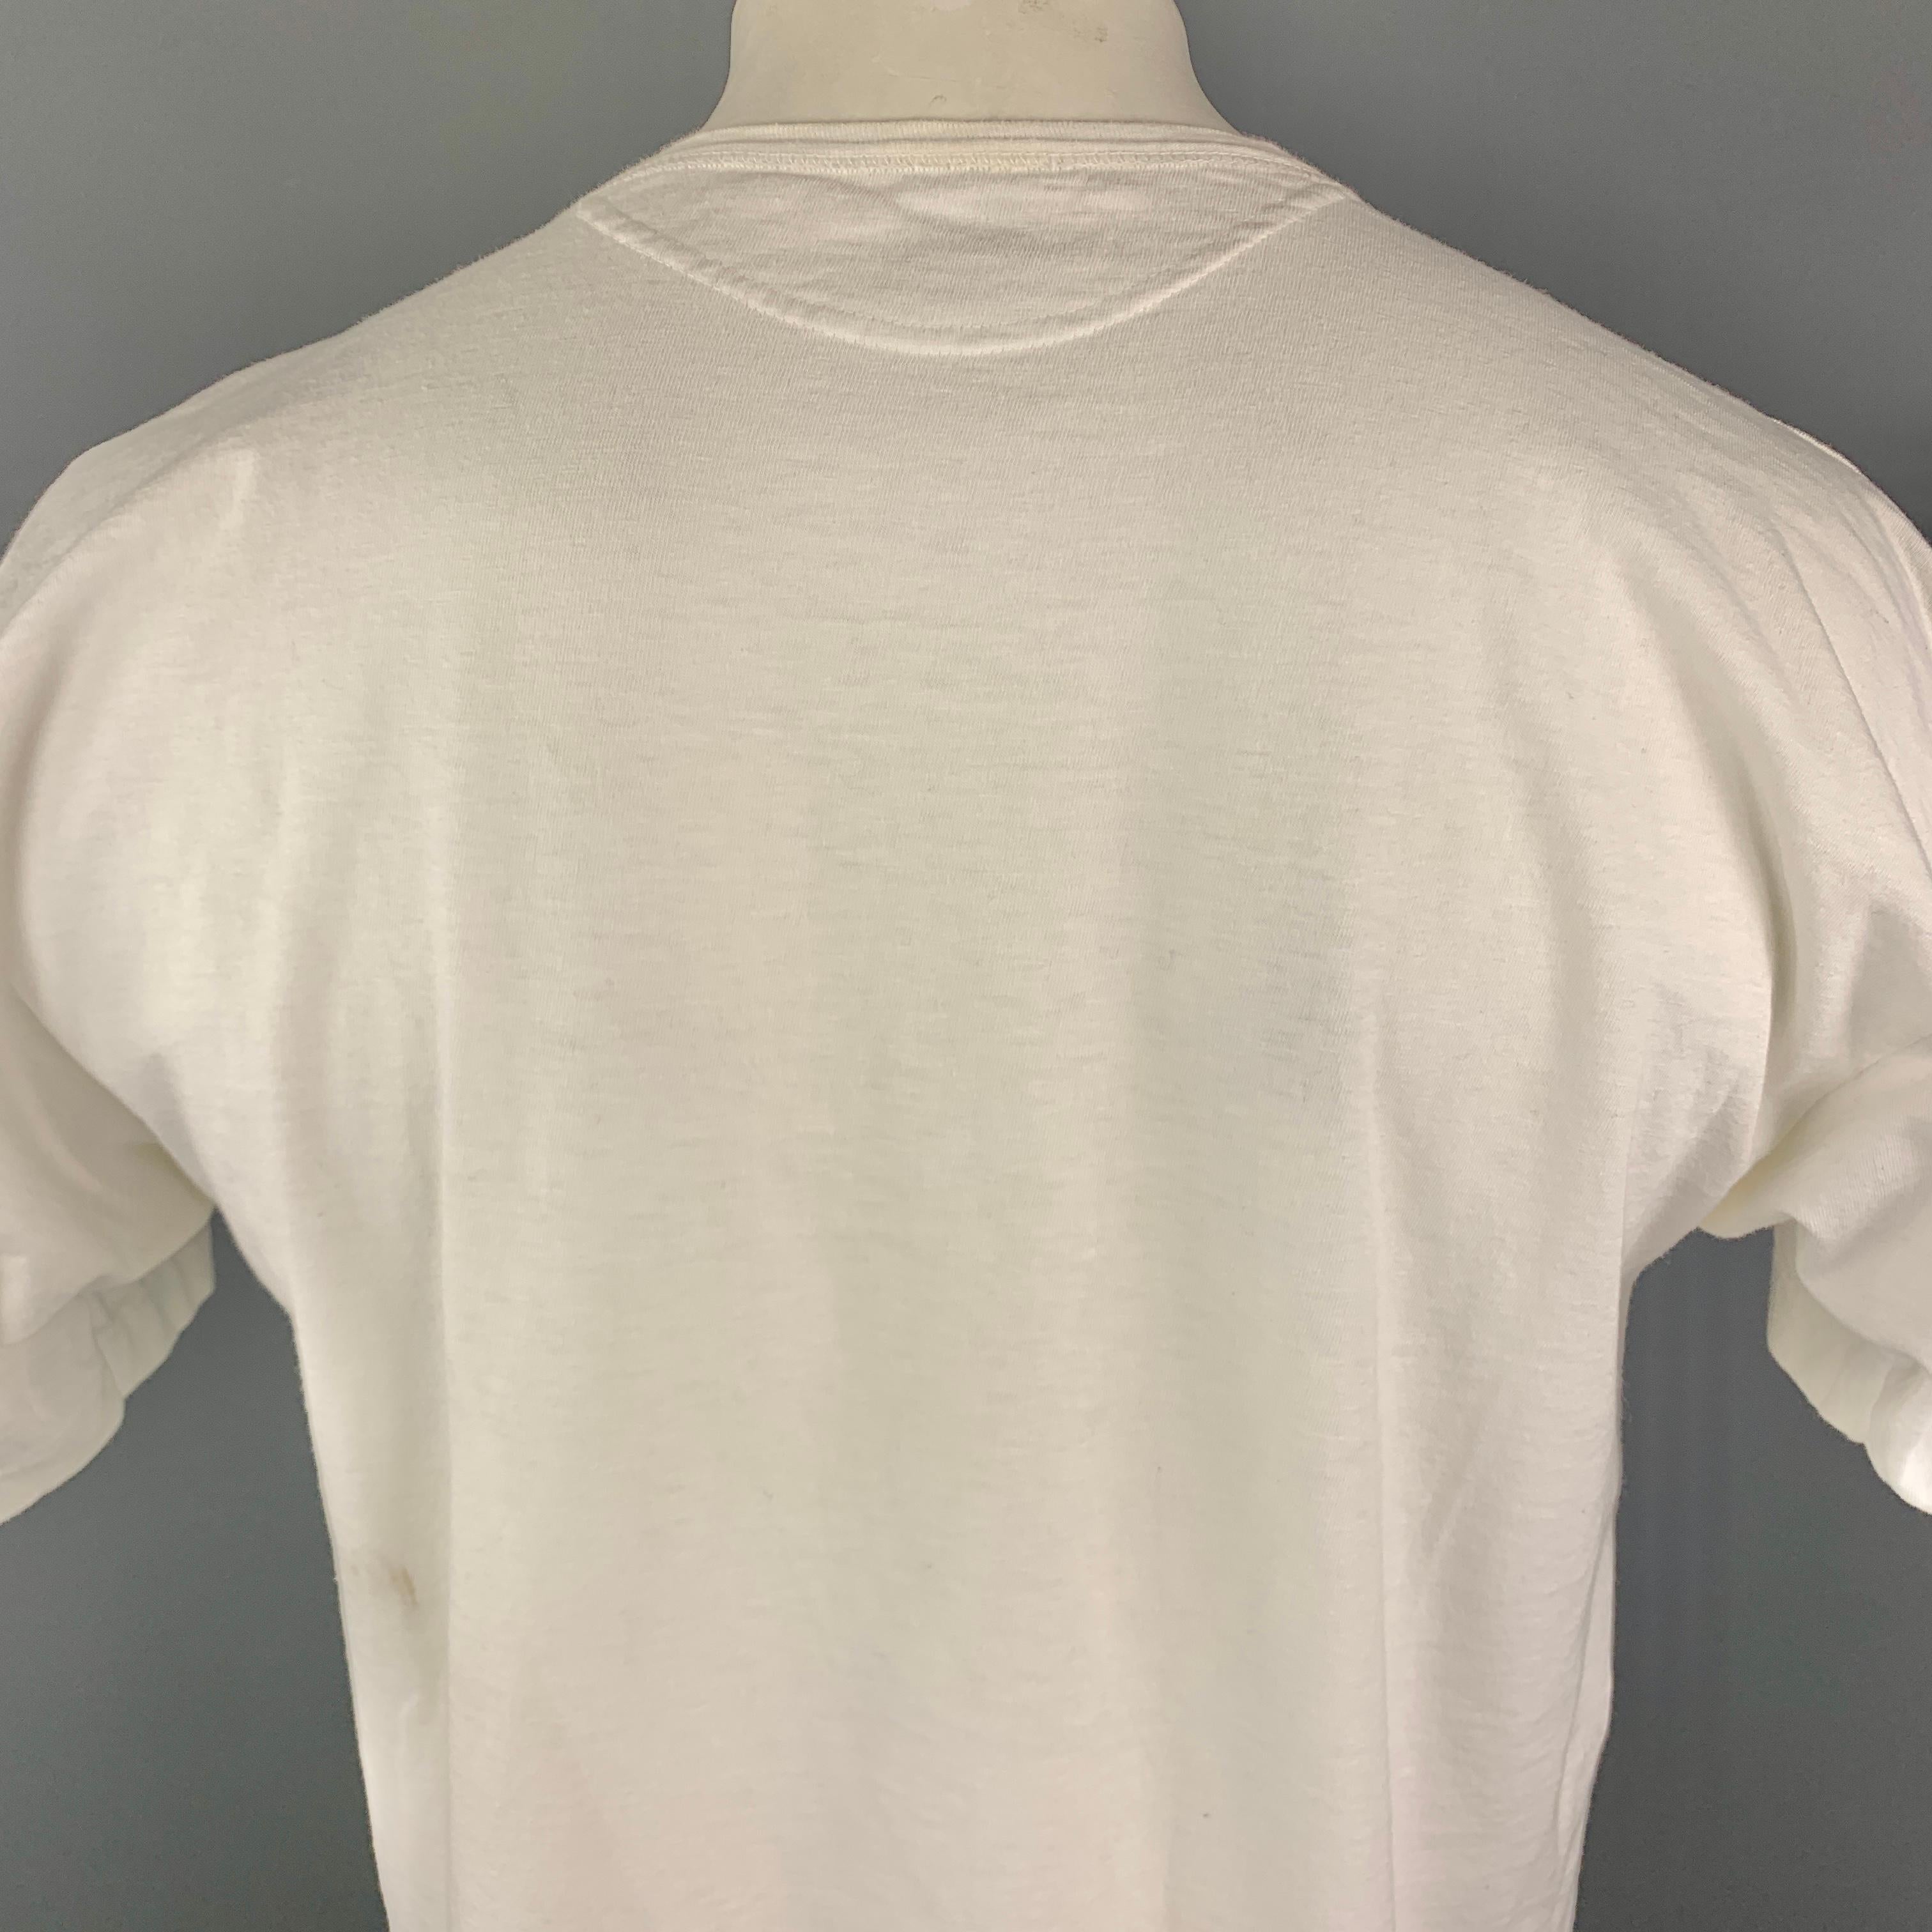 Men's 45rpm Size M White Anchor Crest Vintage Effect Cotton Crew-Neck T-shirt